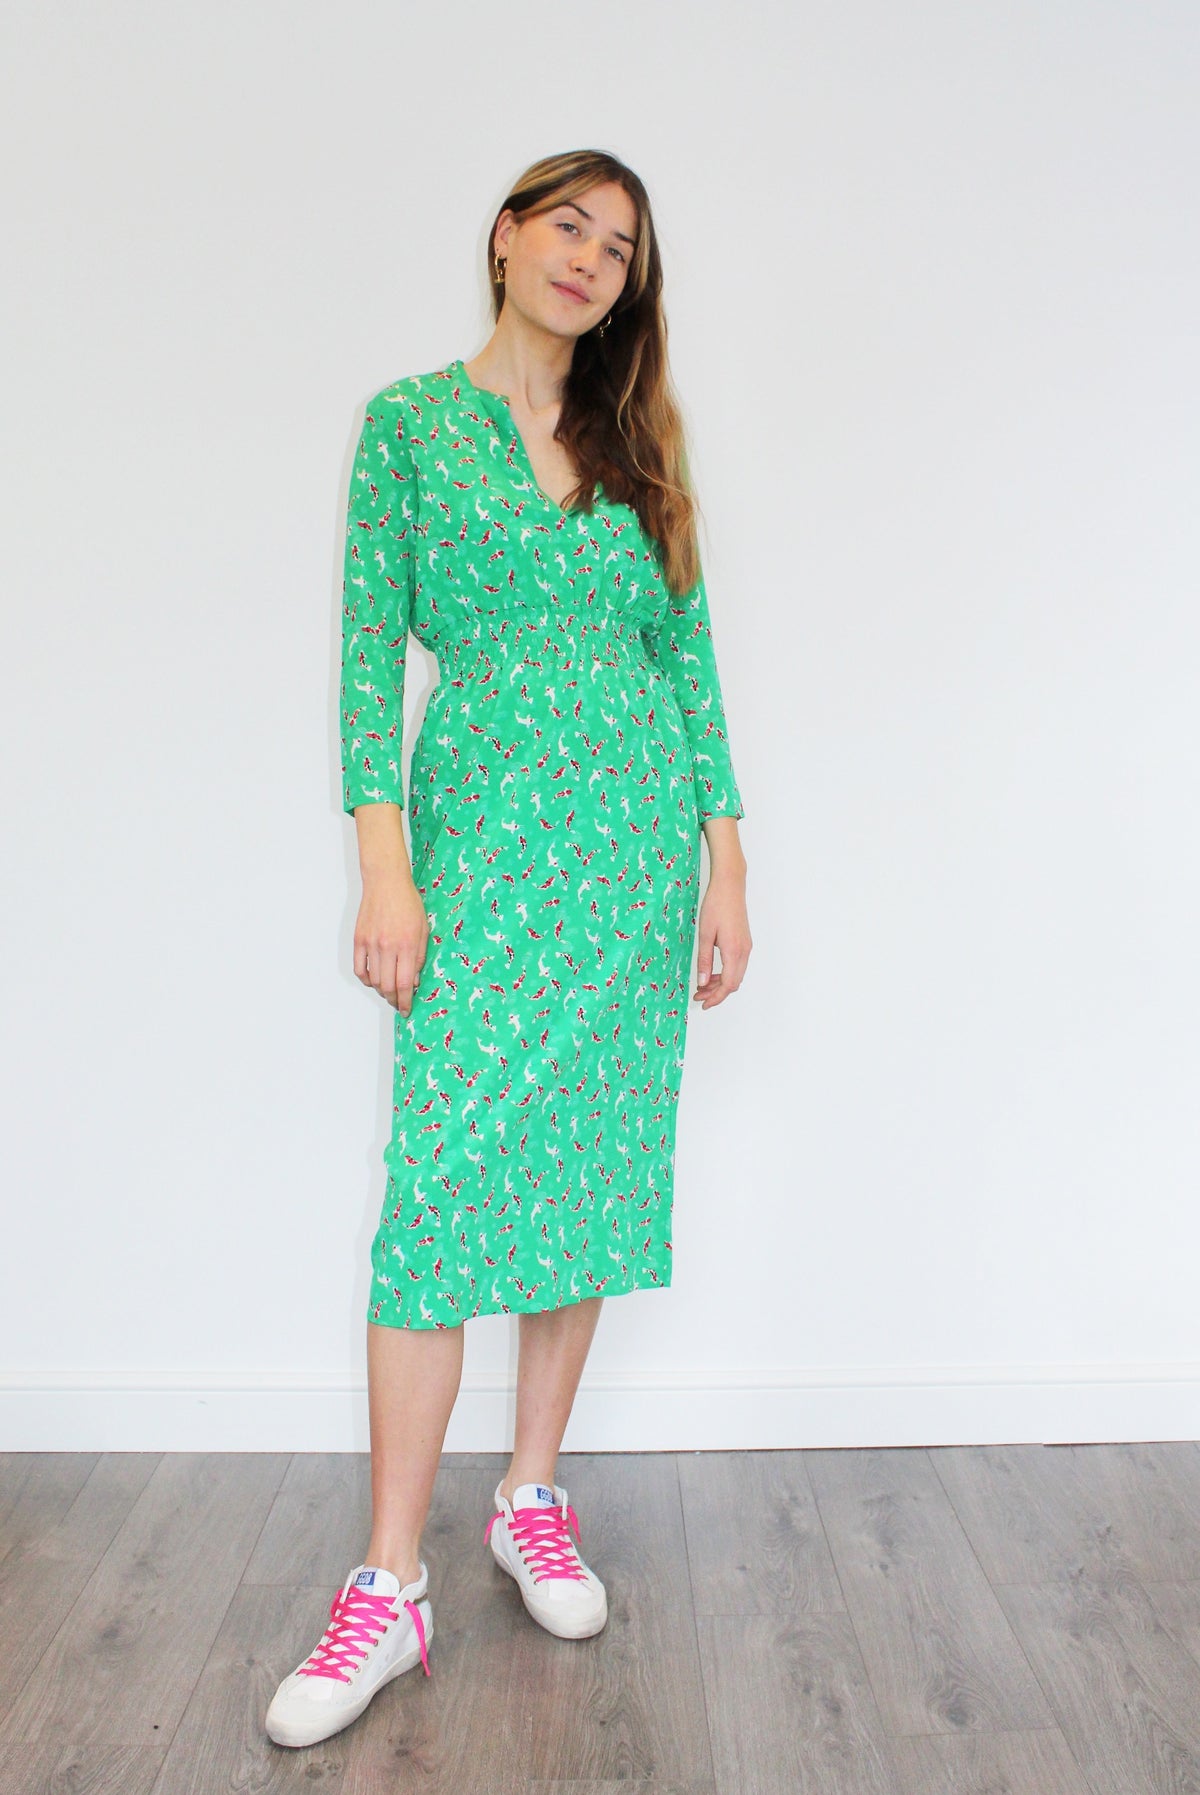 PPL Tiffany Dress in Koi 02 Green